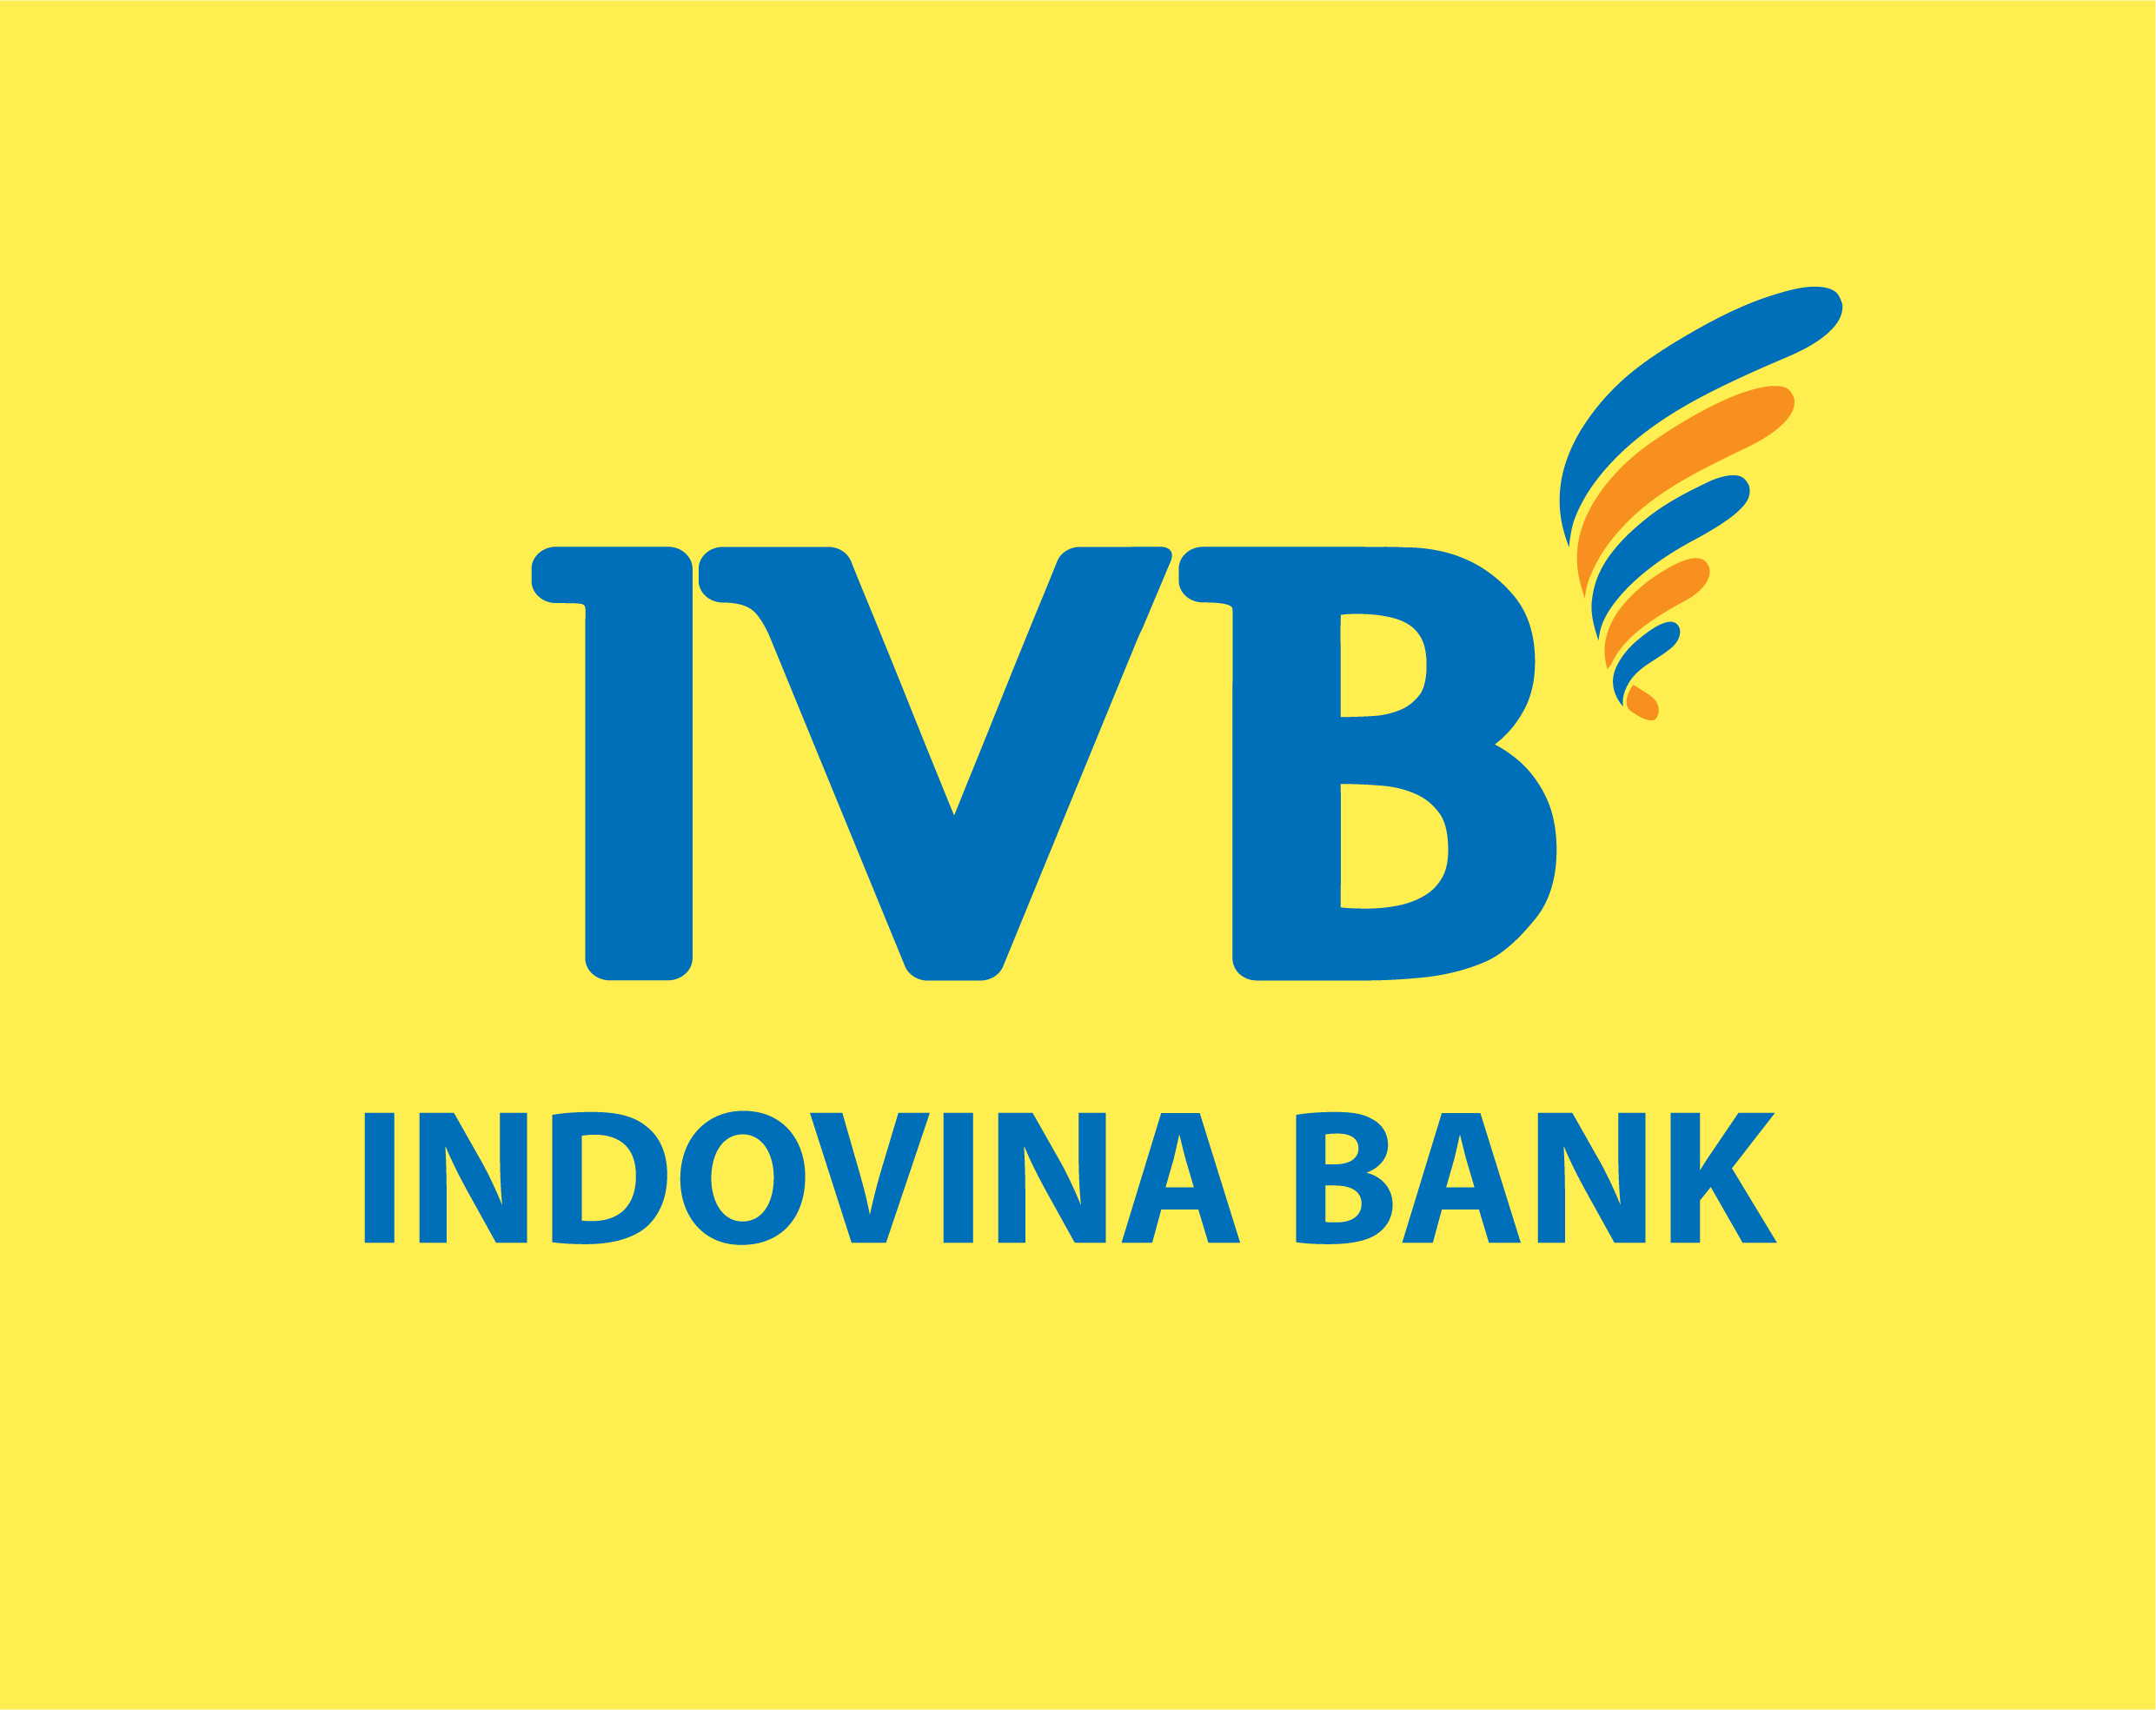 NGÂN HÀNG INDOVINA - INDOVINA BANK